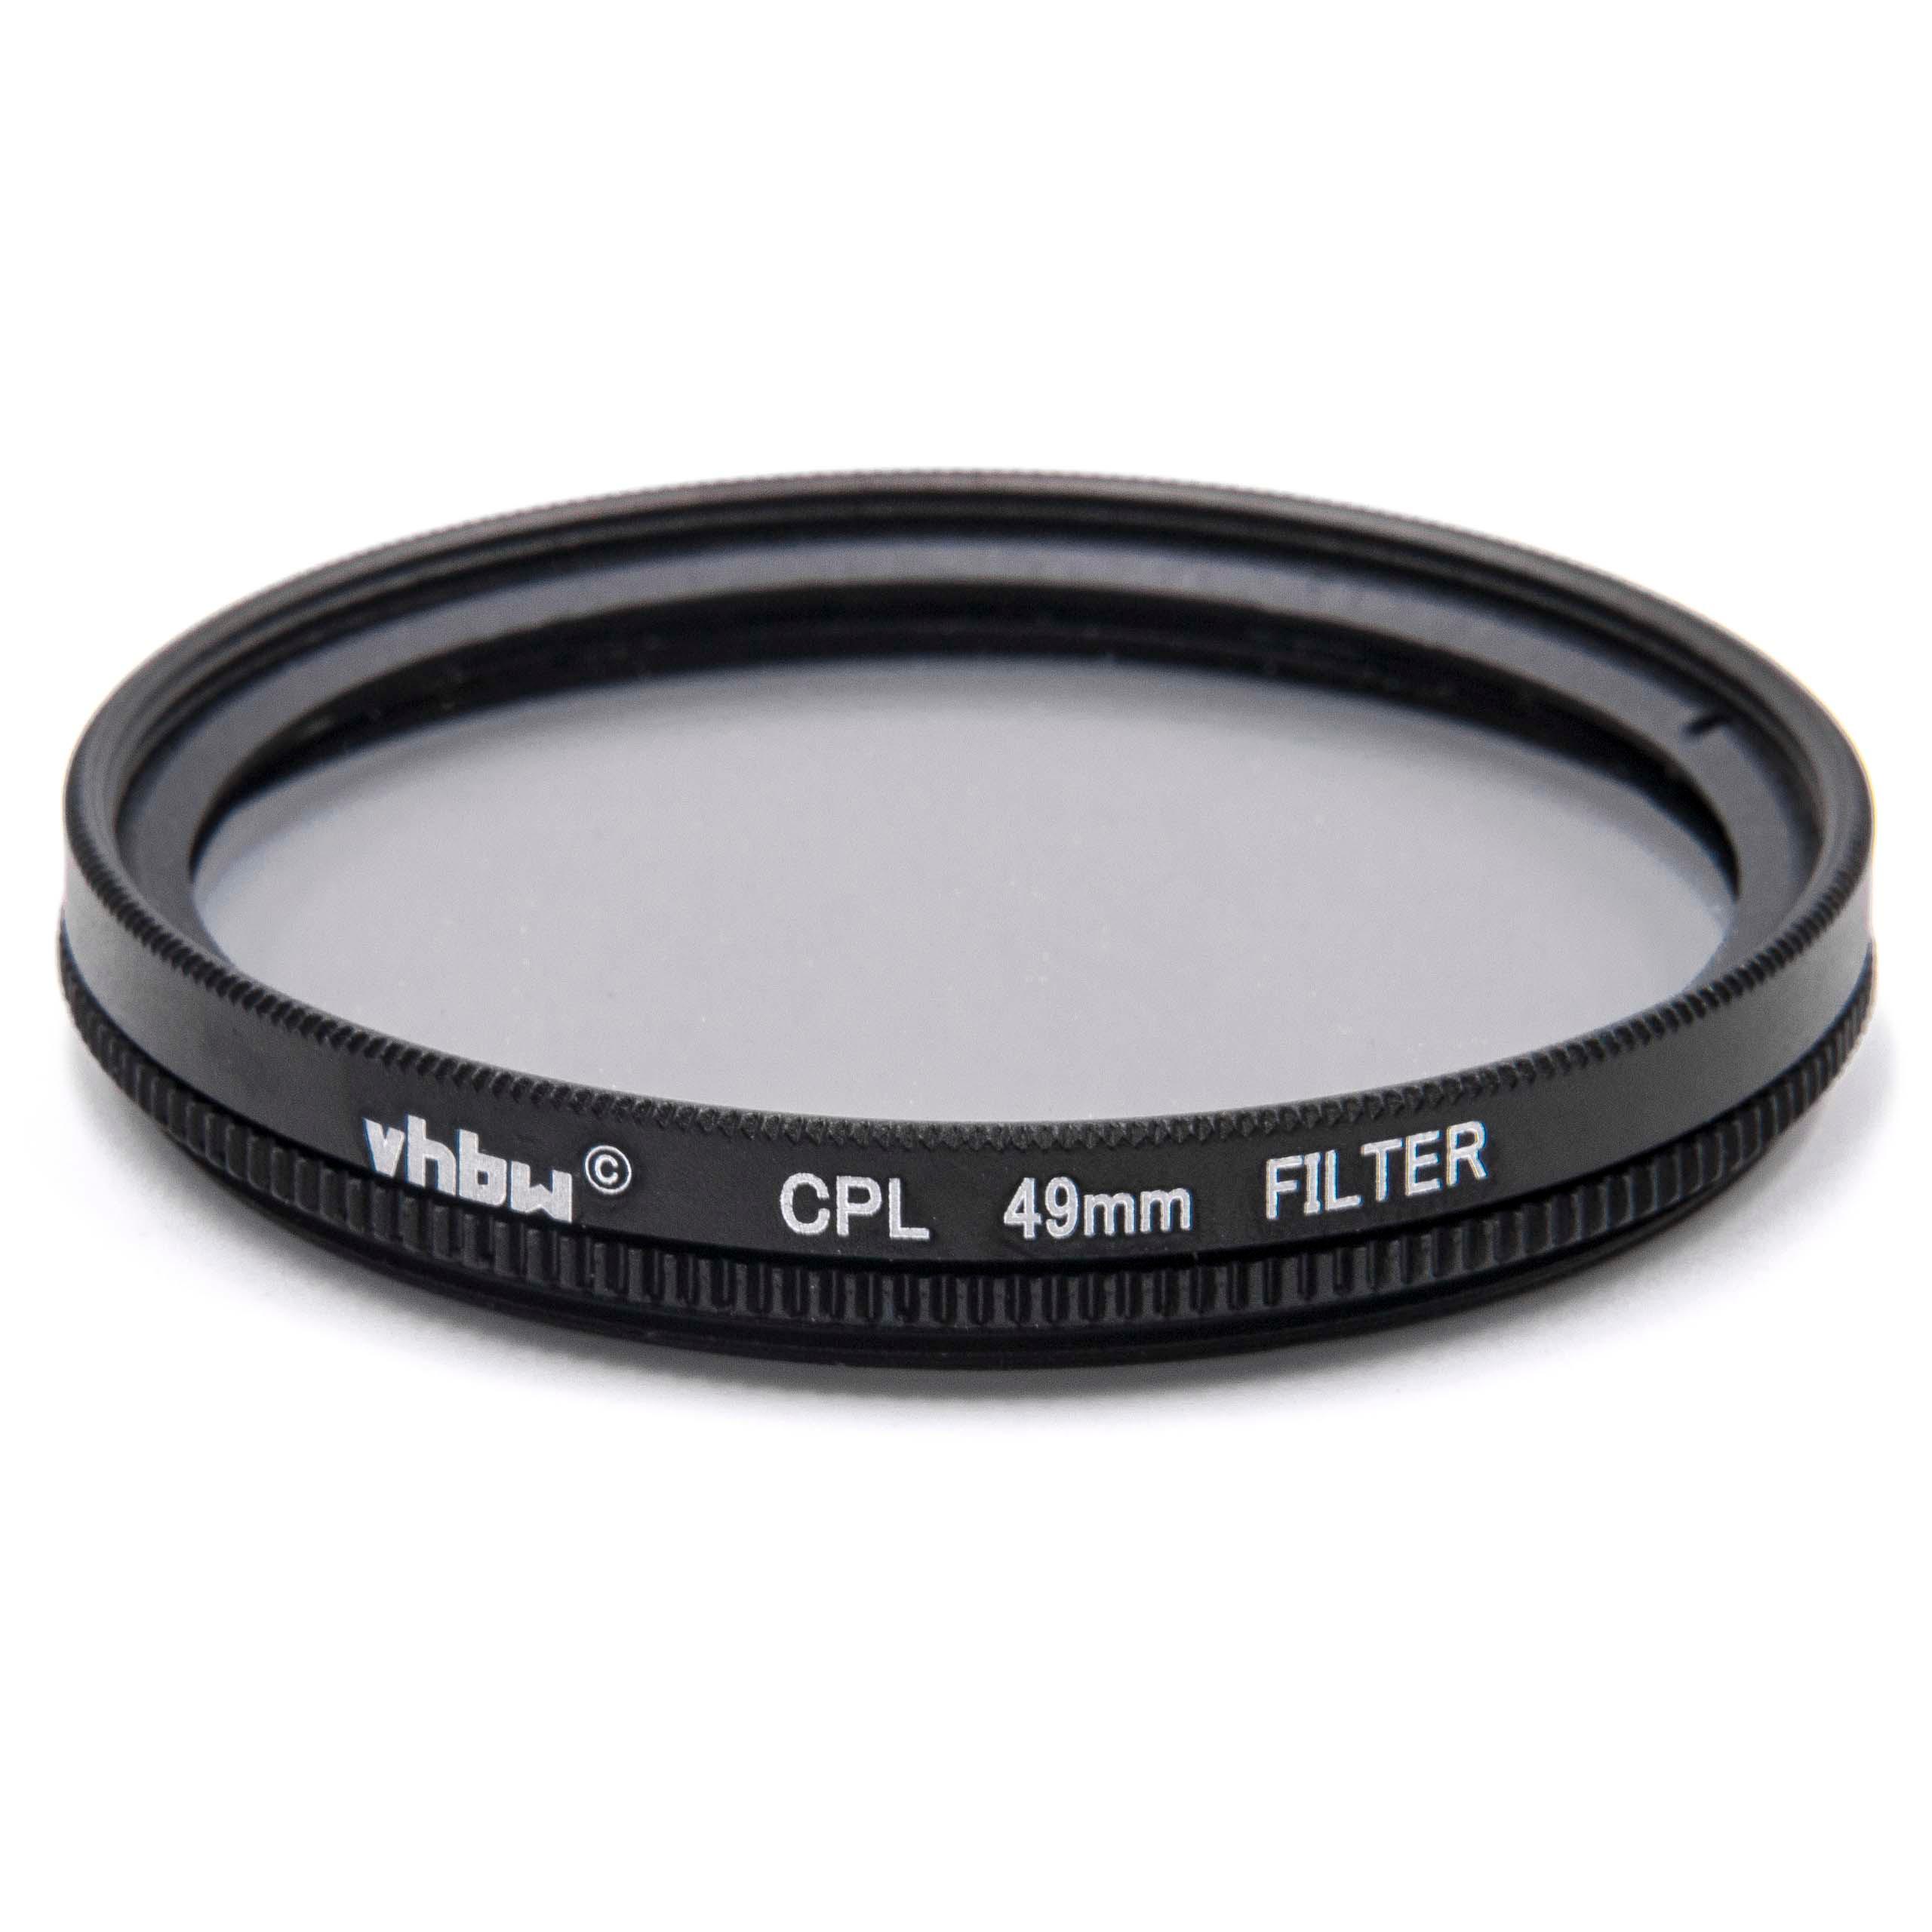 Filtro polarizador para objetivos y cámaras con rosca de filtro de 49 mm - Filtro CPL